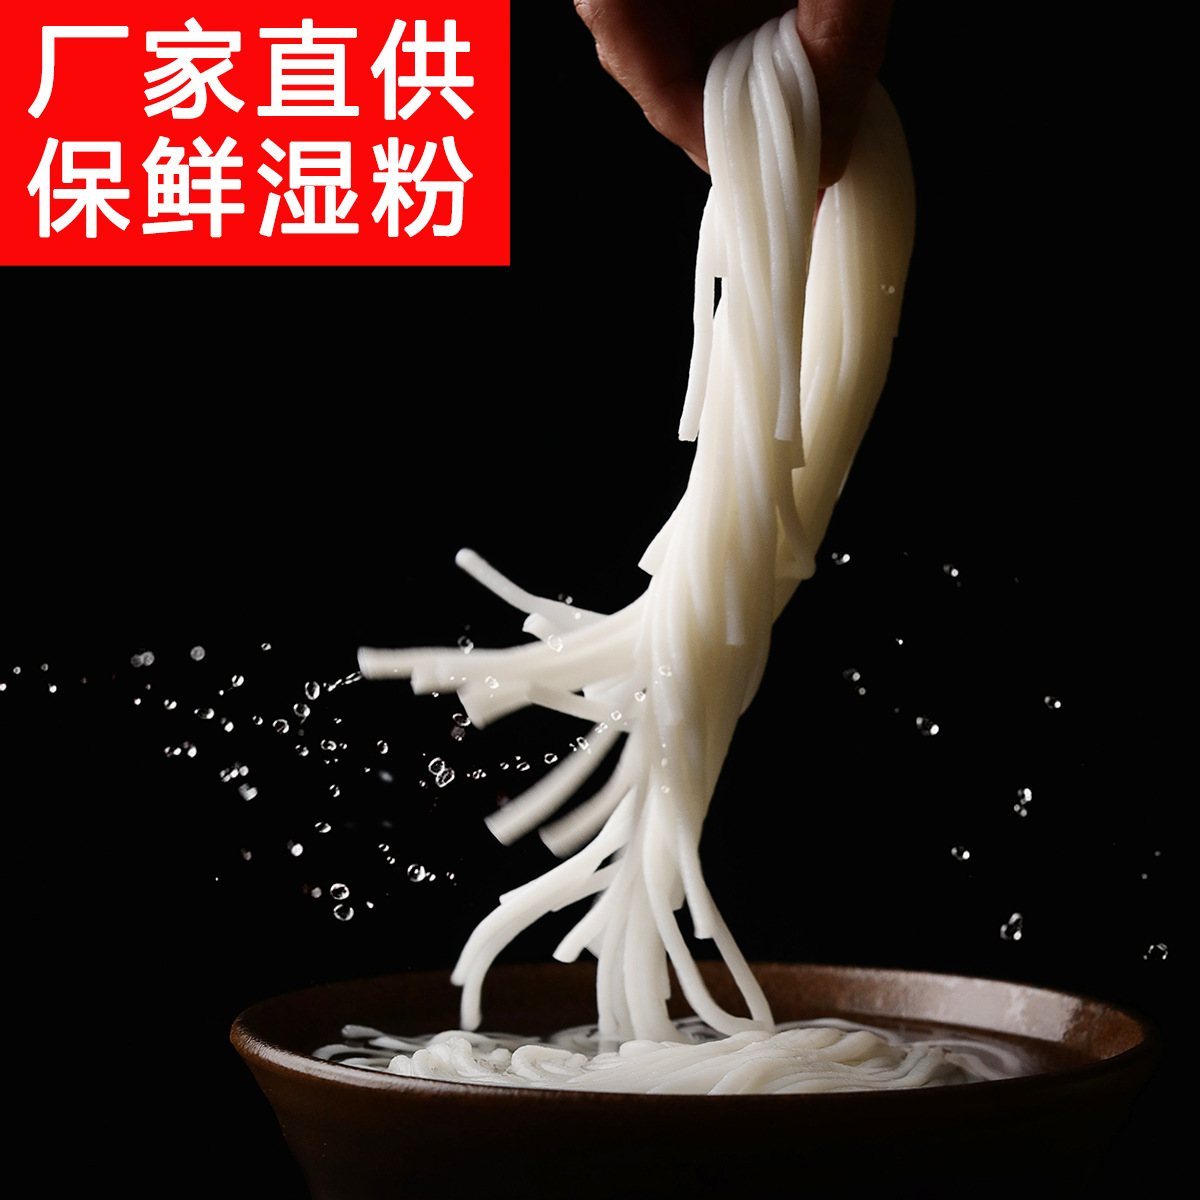 厂家桂林米粉速食方便湿米粉保鲜米